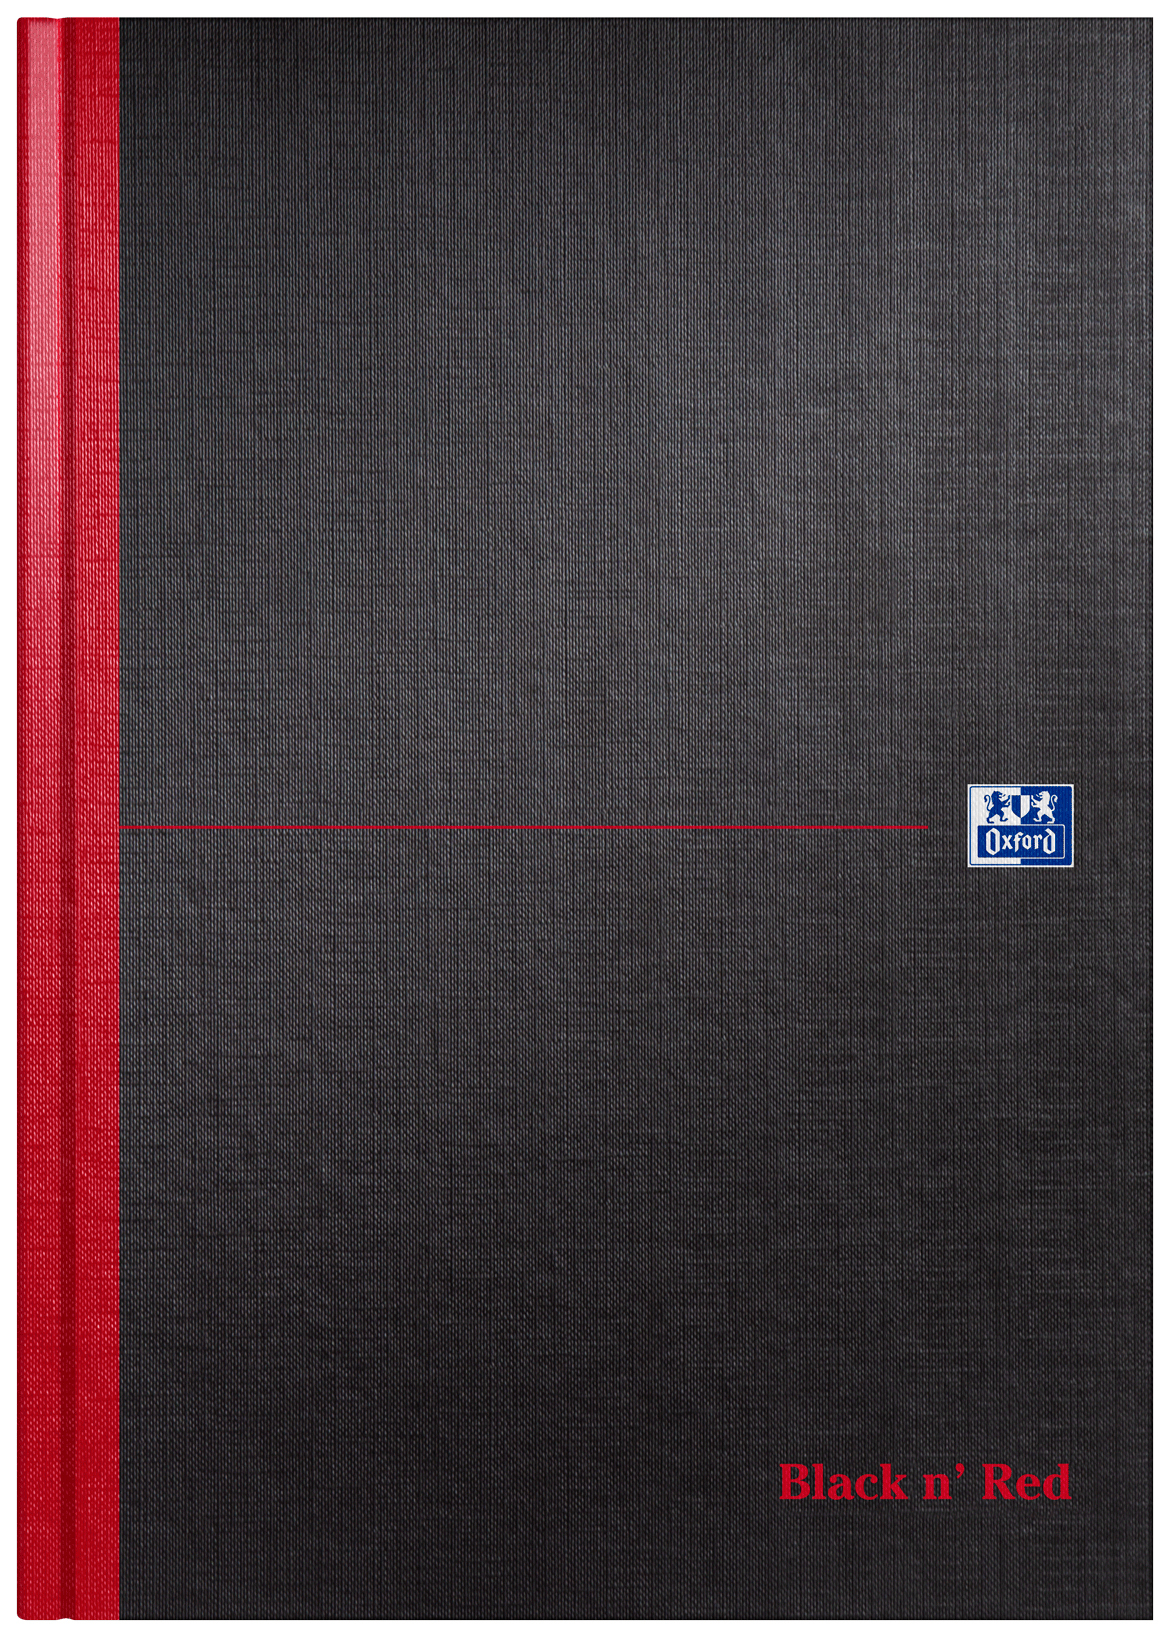 OXFORD Black n'Red Carnet note 100080489 A4, blanco 96 flls. A4, blanco 96 flls.